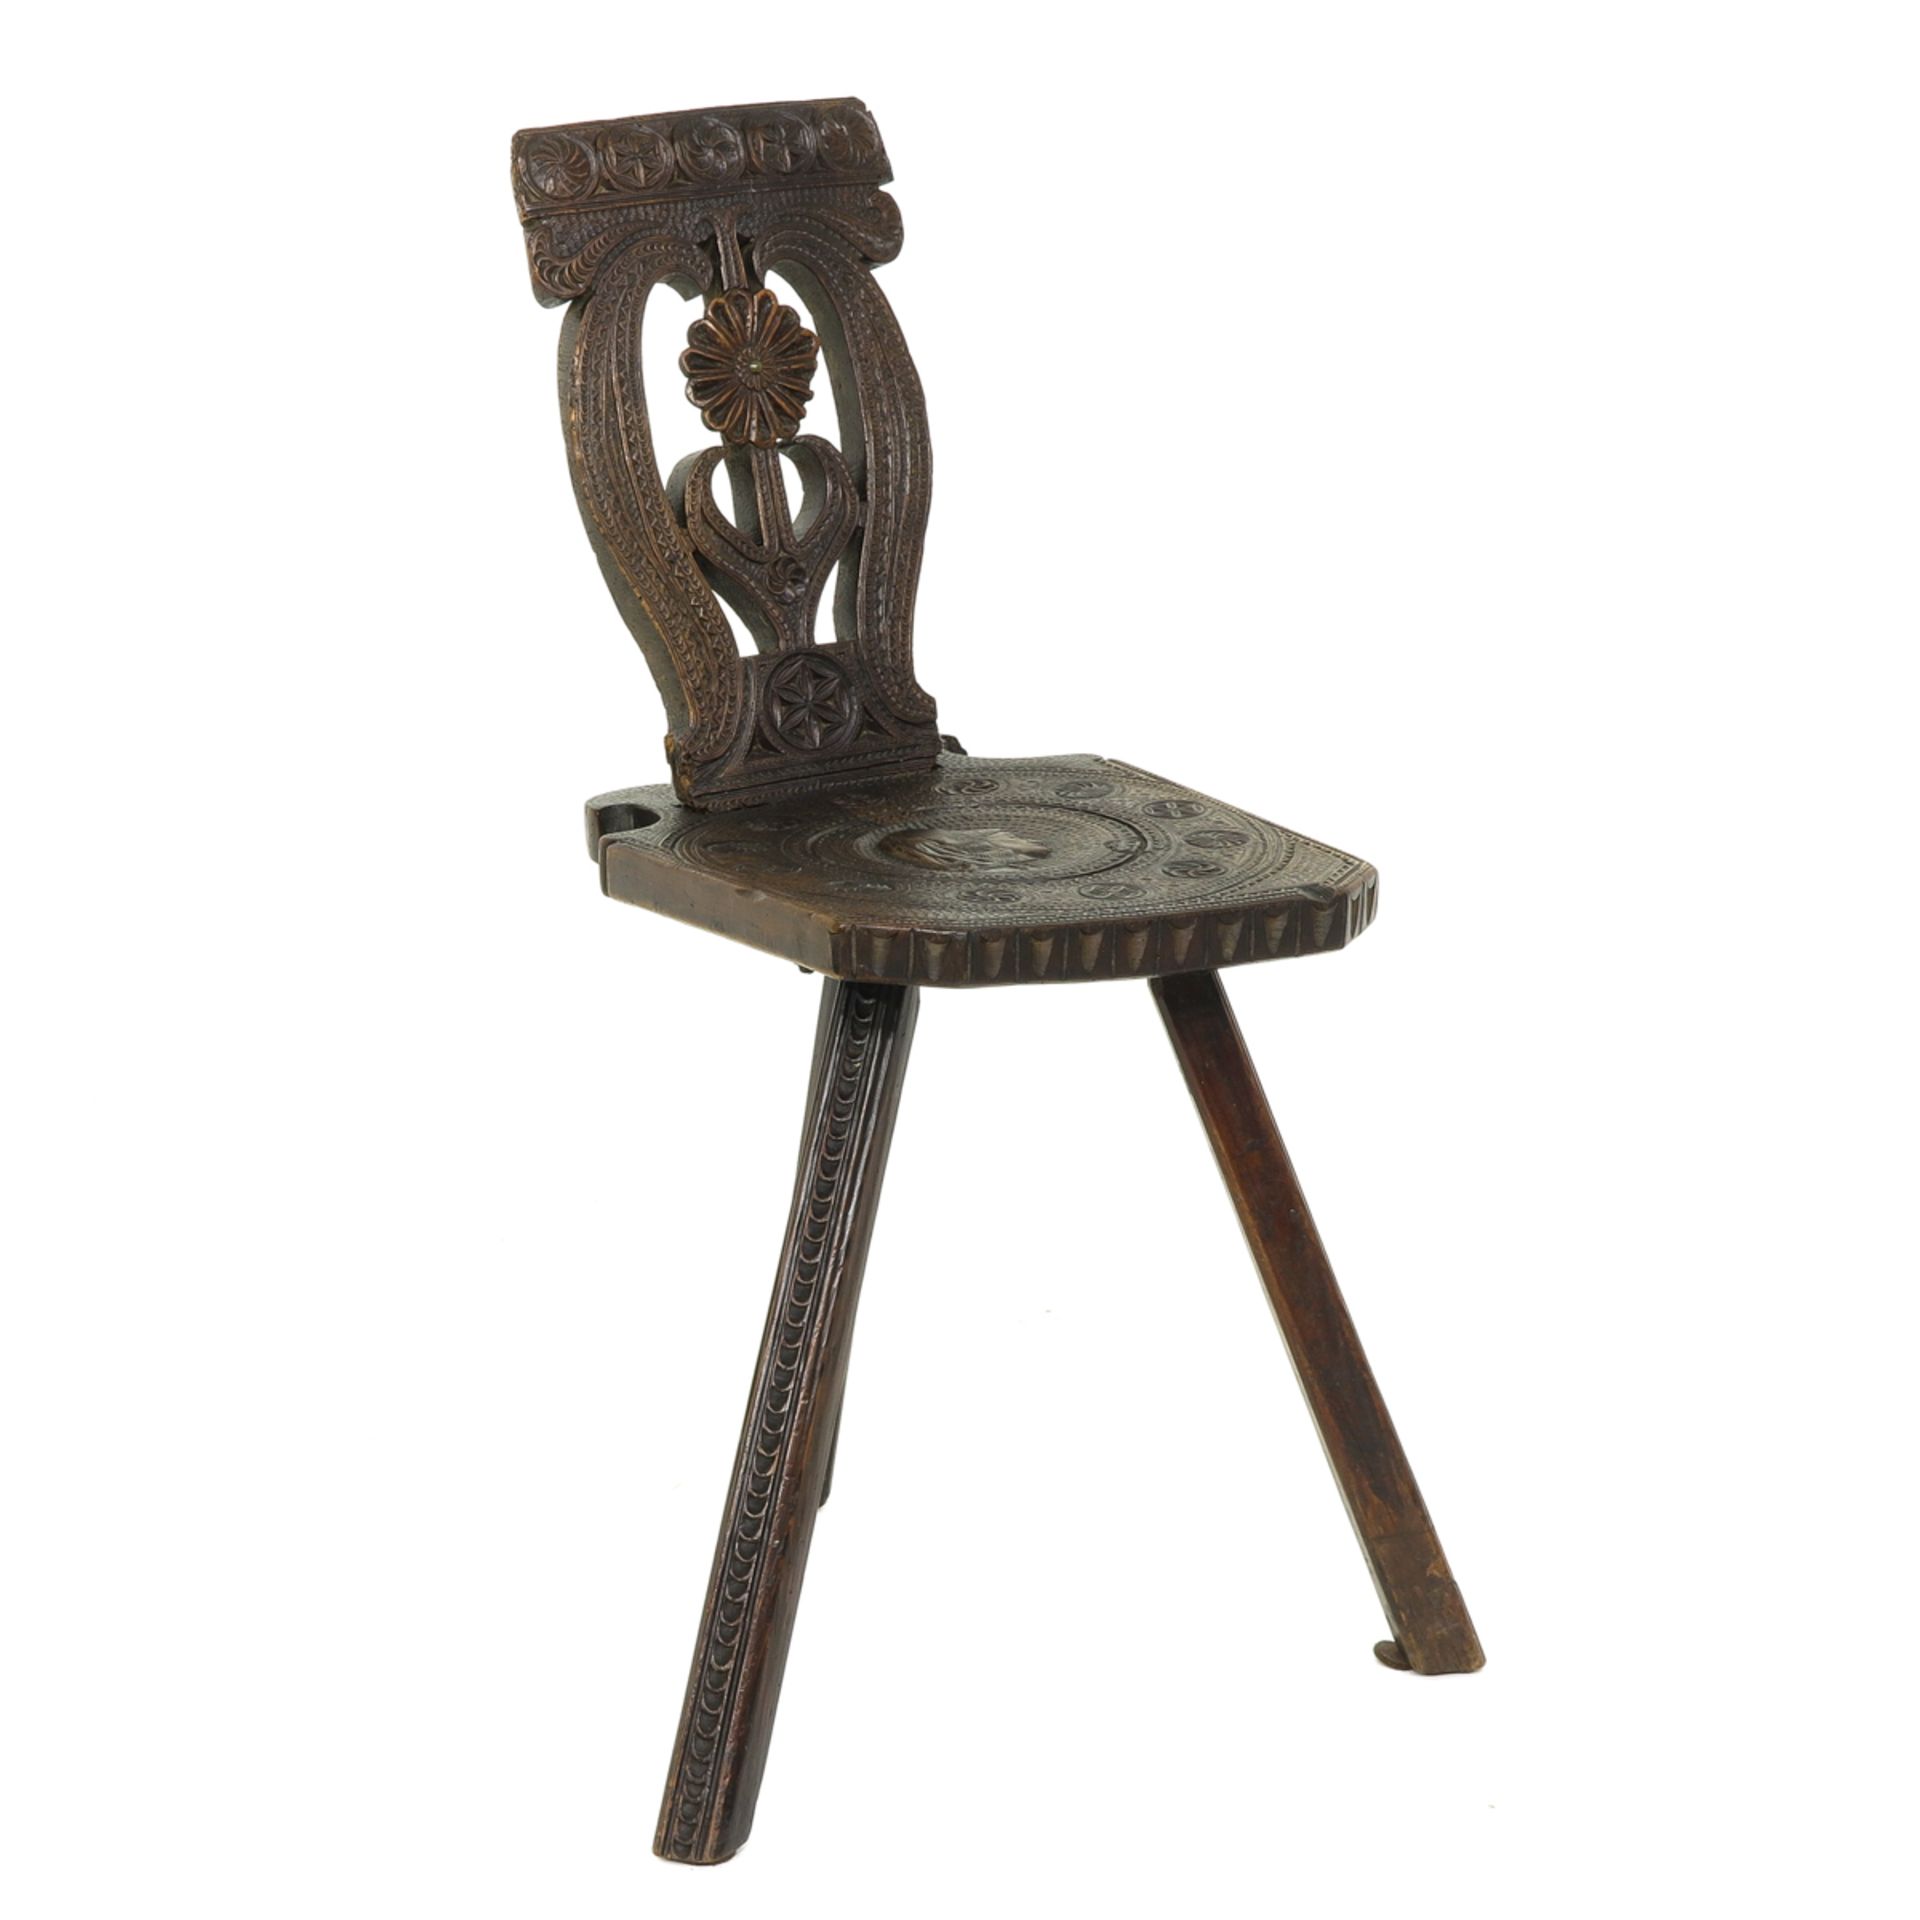 A German Chair